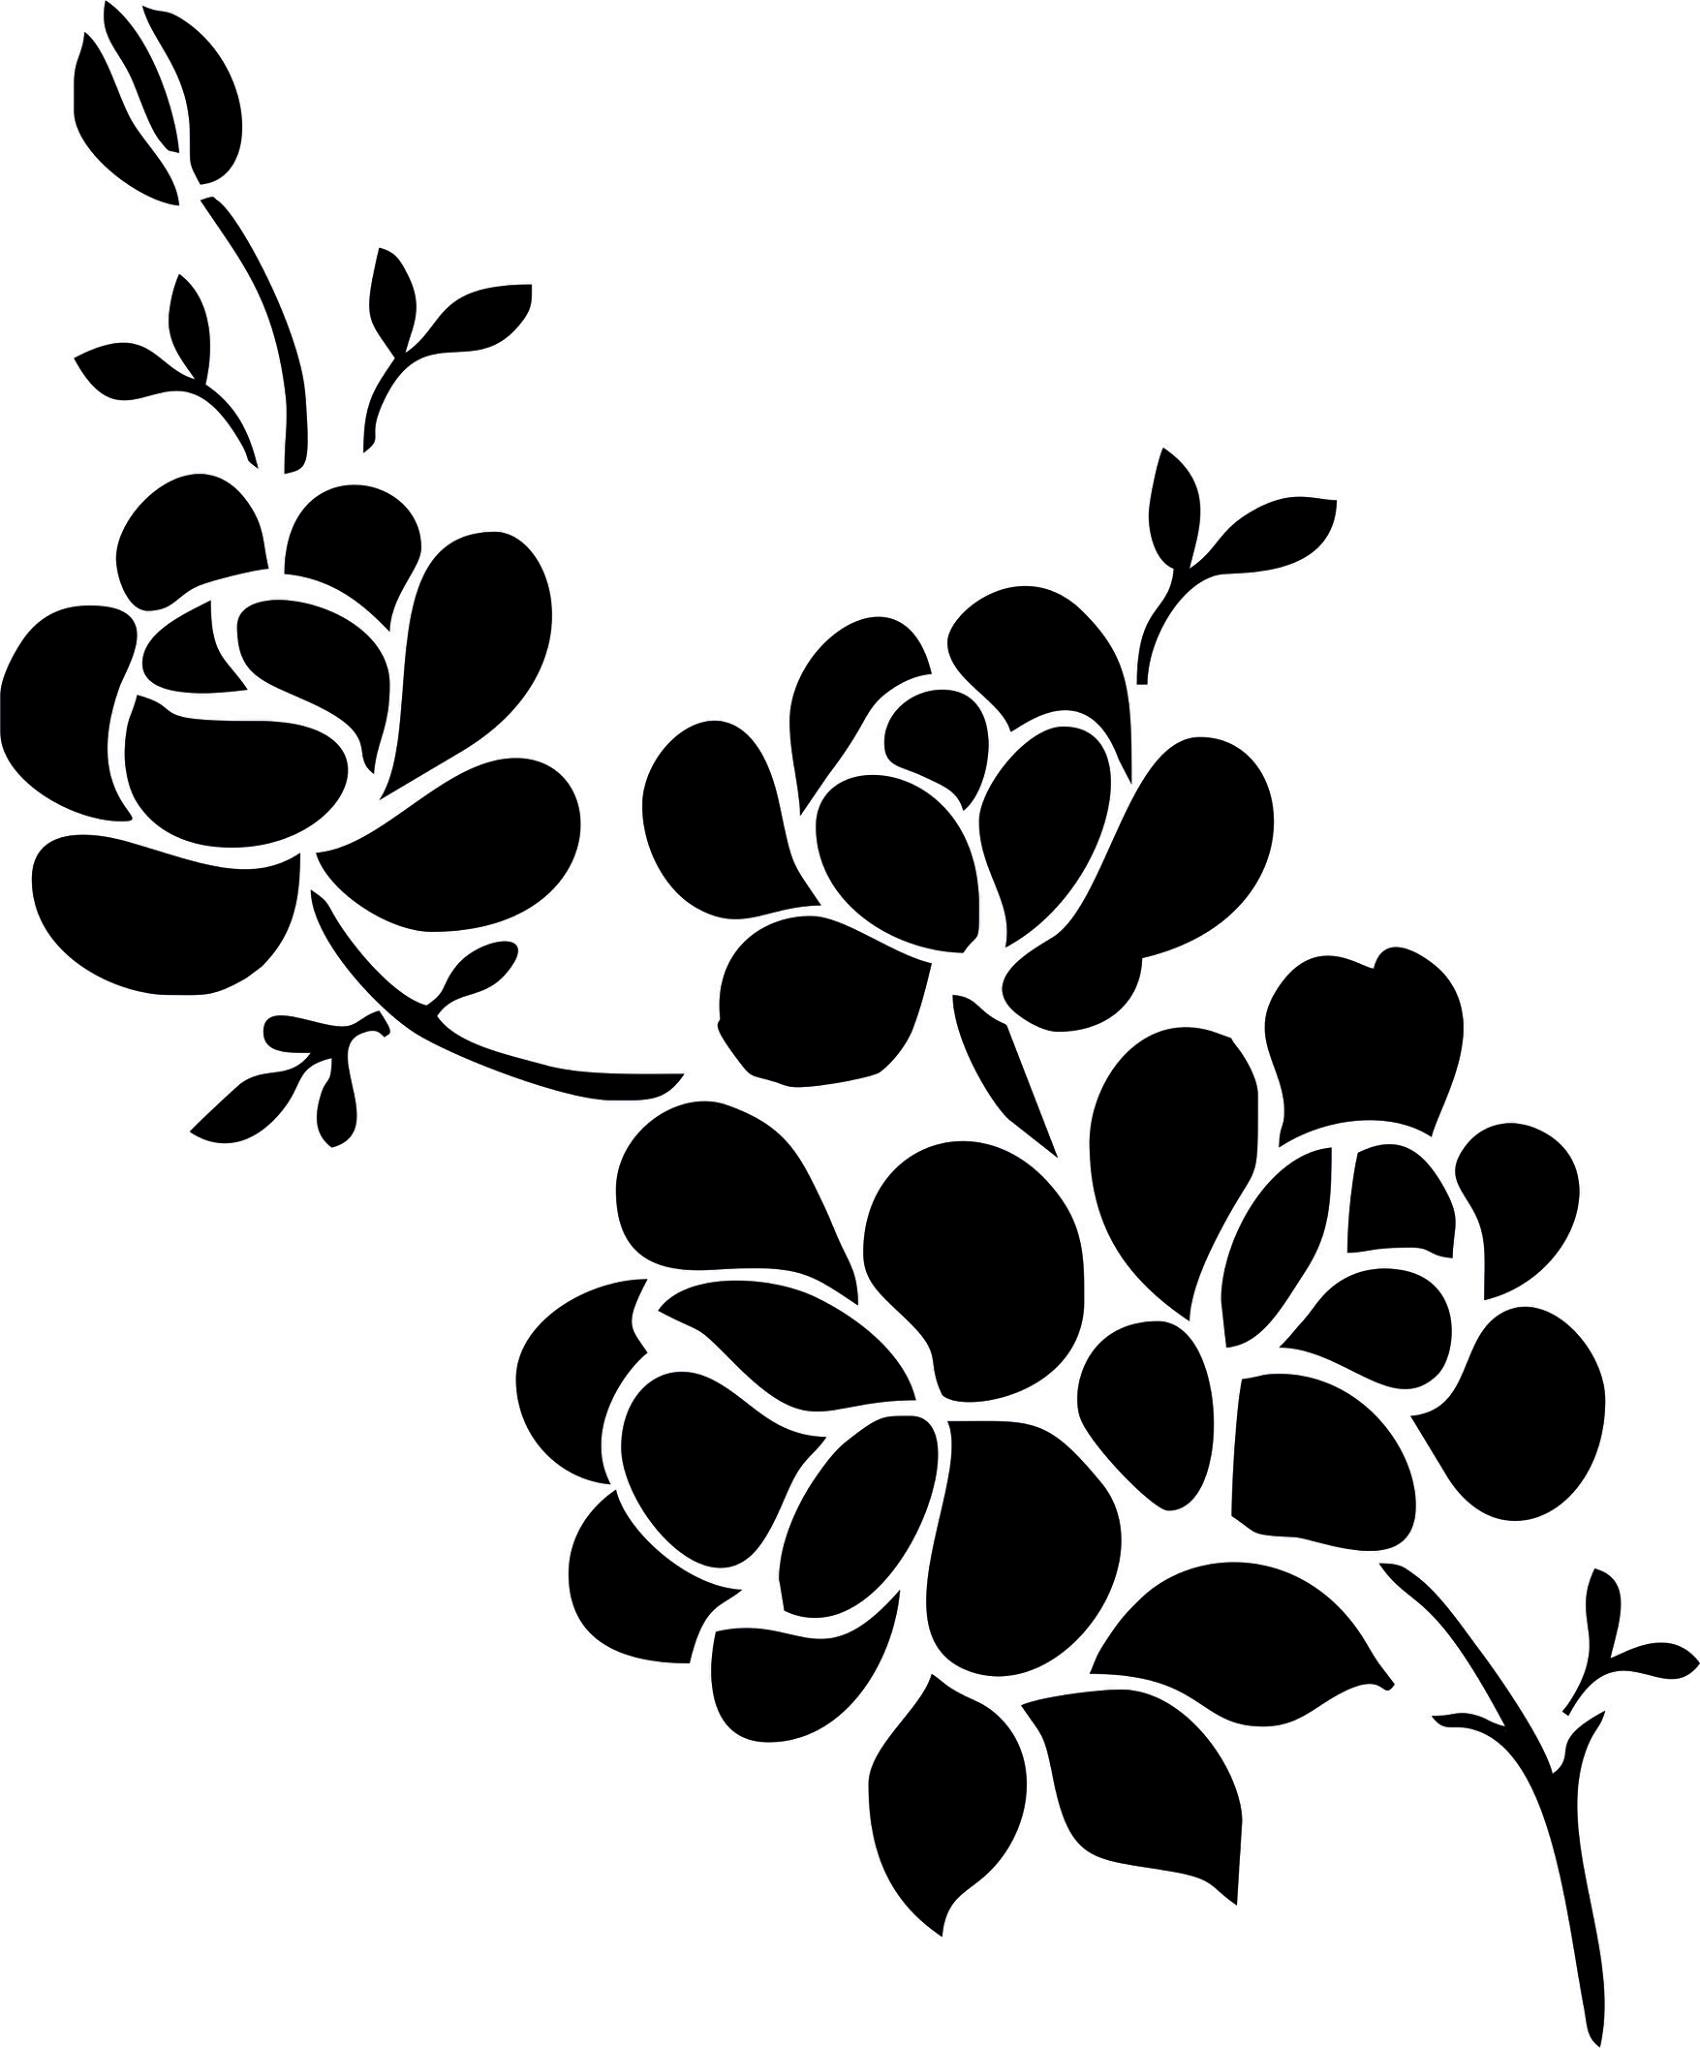 Elegant Black And White Flower Vector Art jpg Image Free Download.